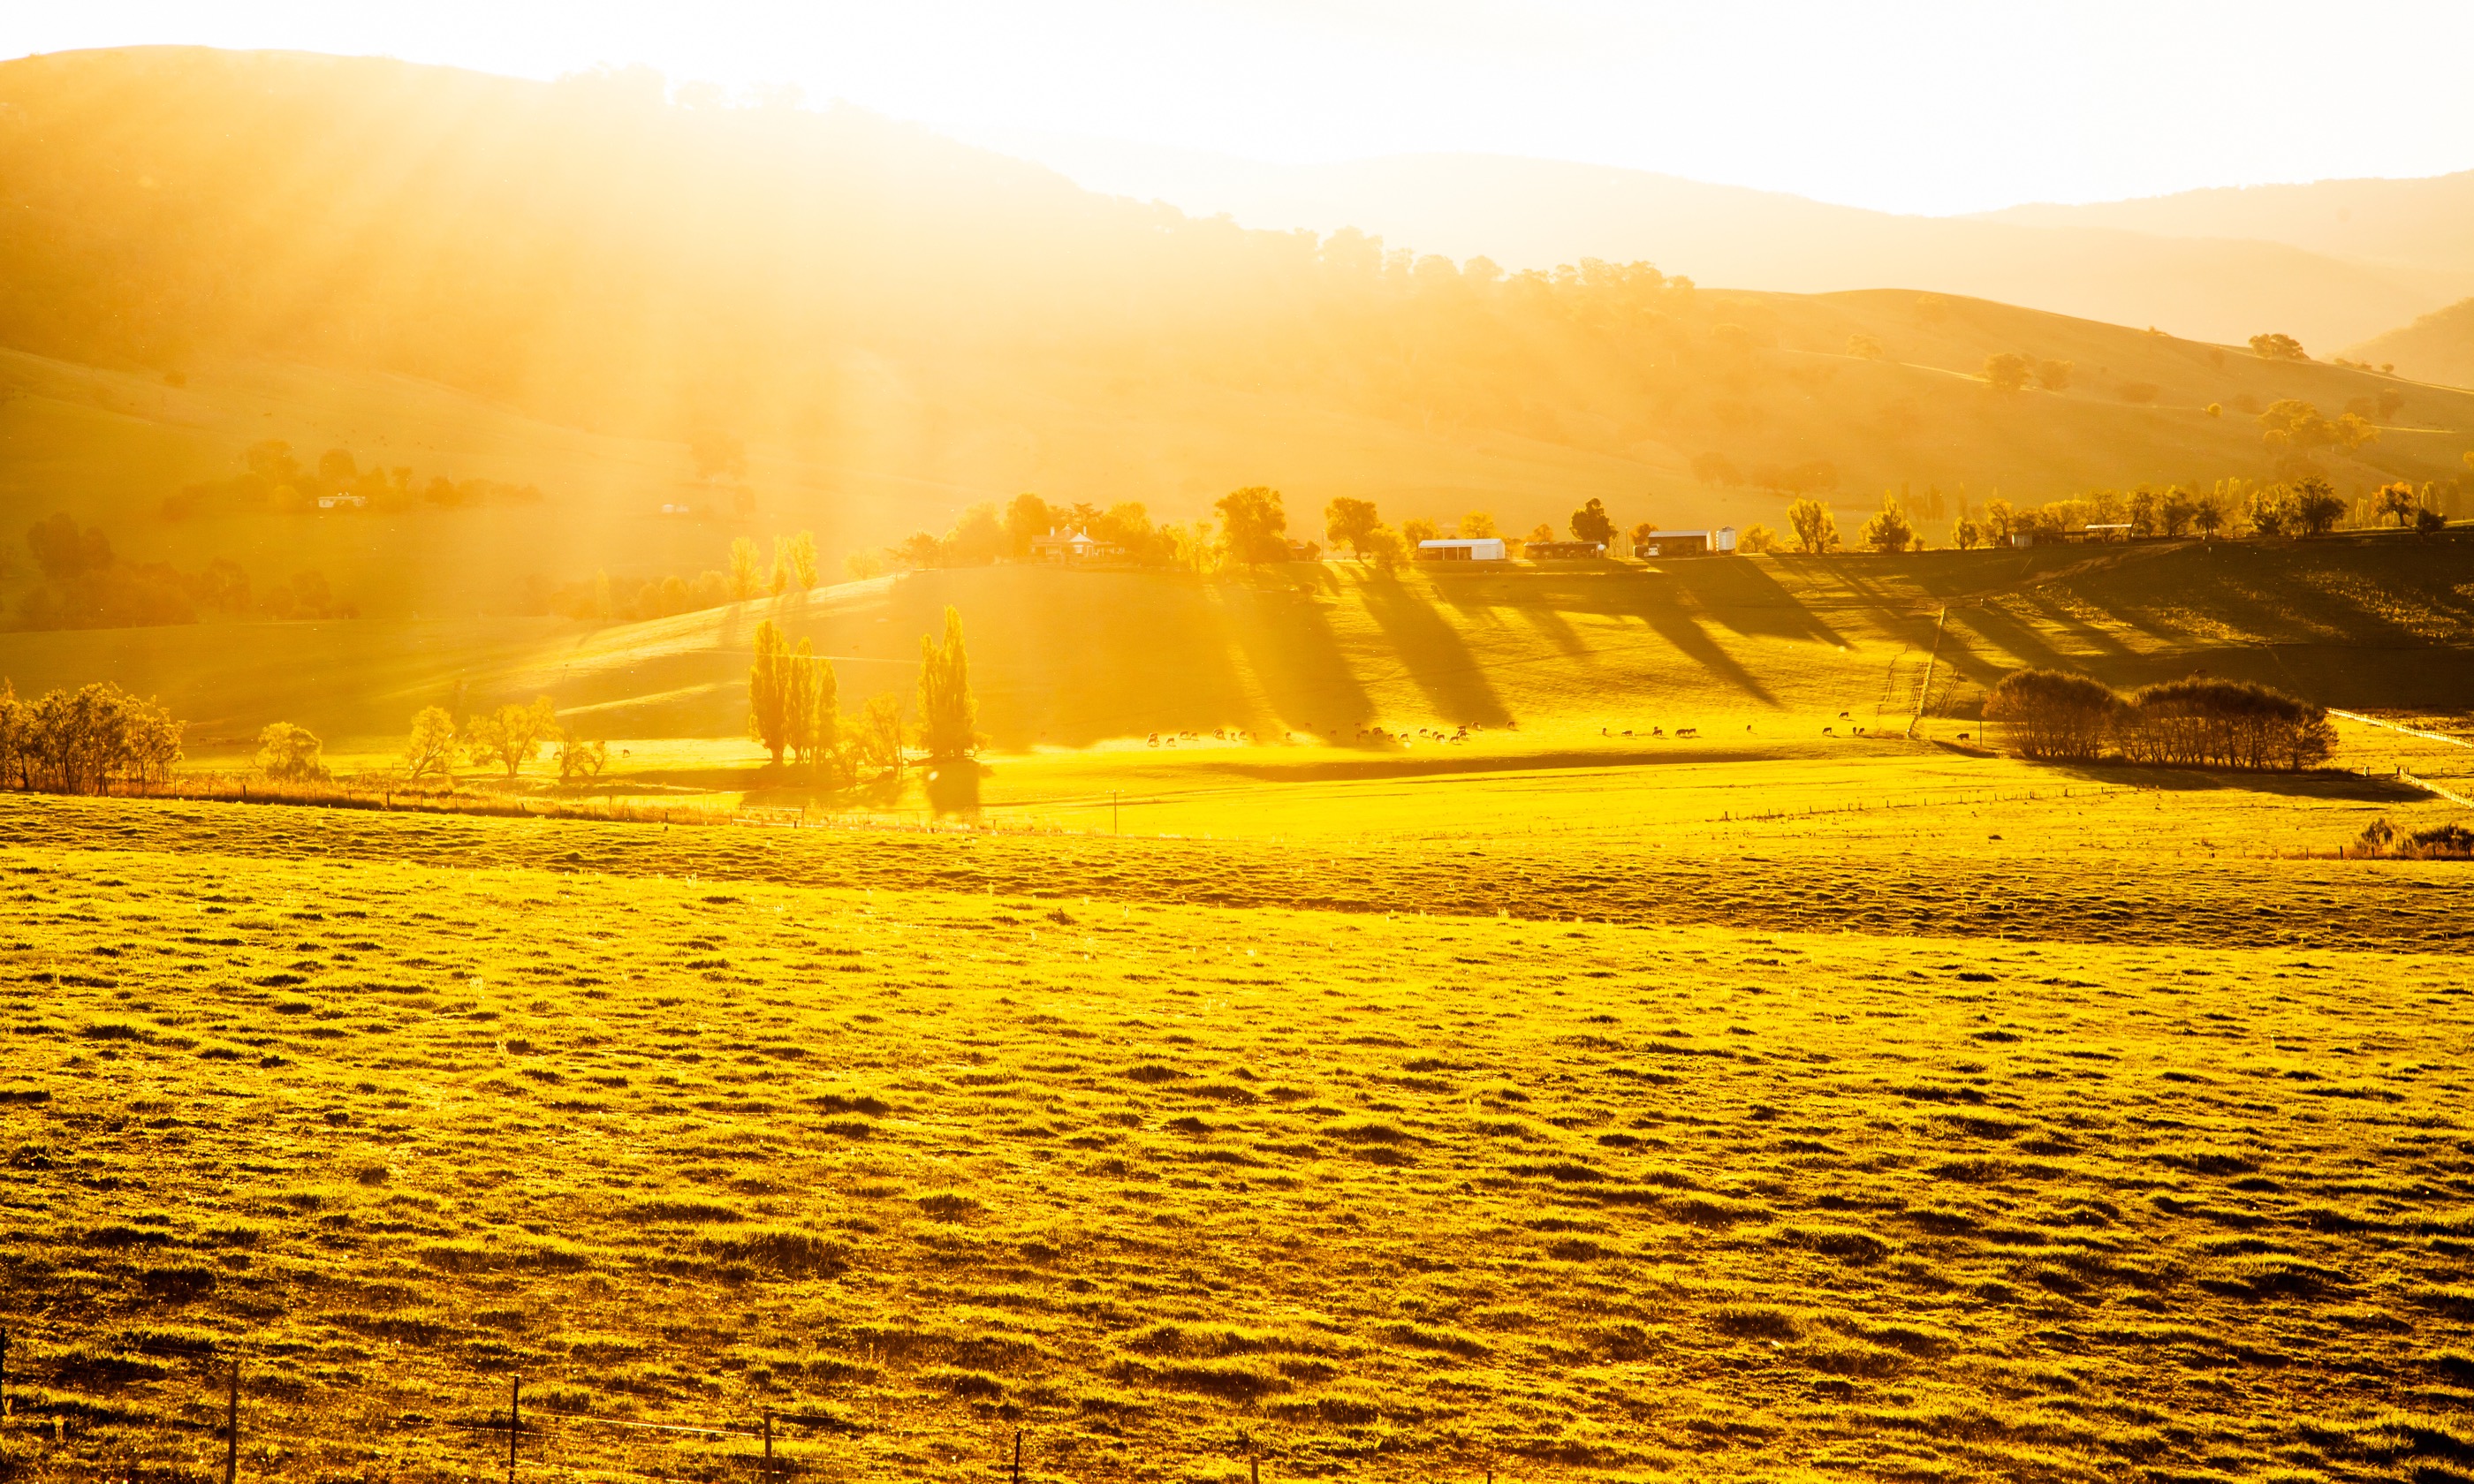 Sunset over an Australian farm (Shutterstock.com)